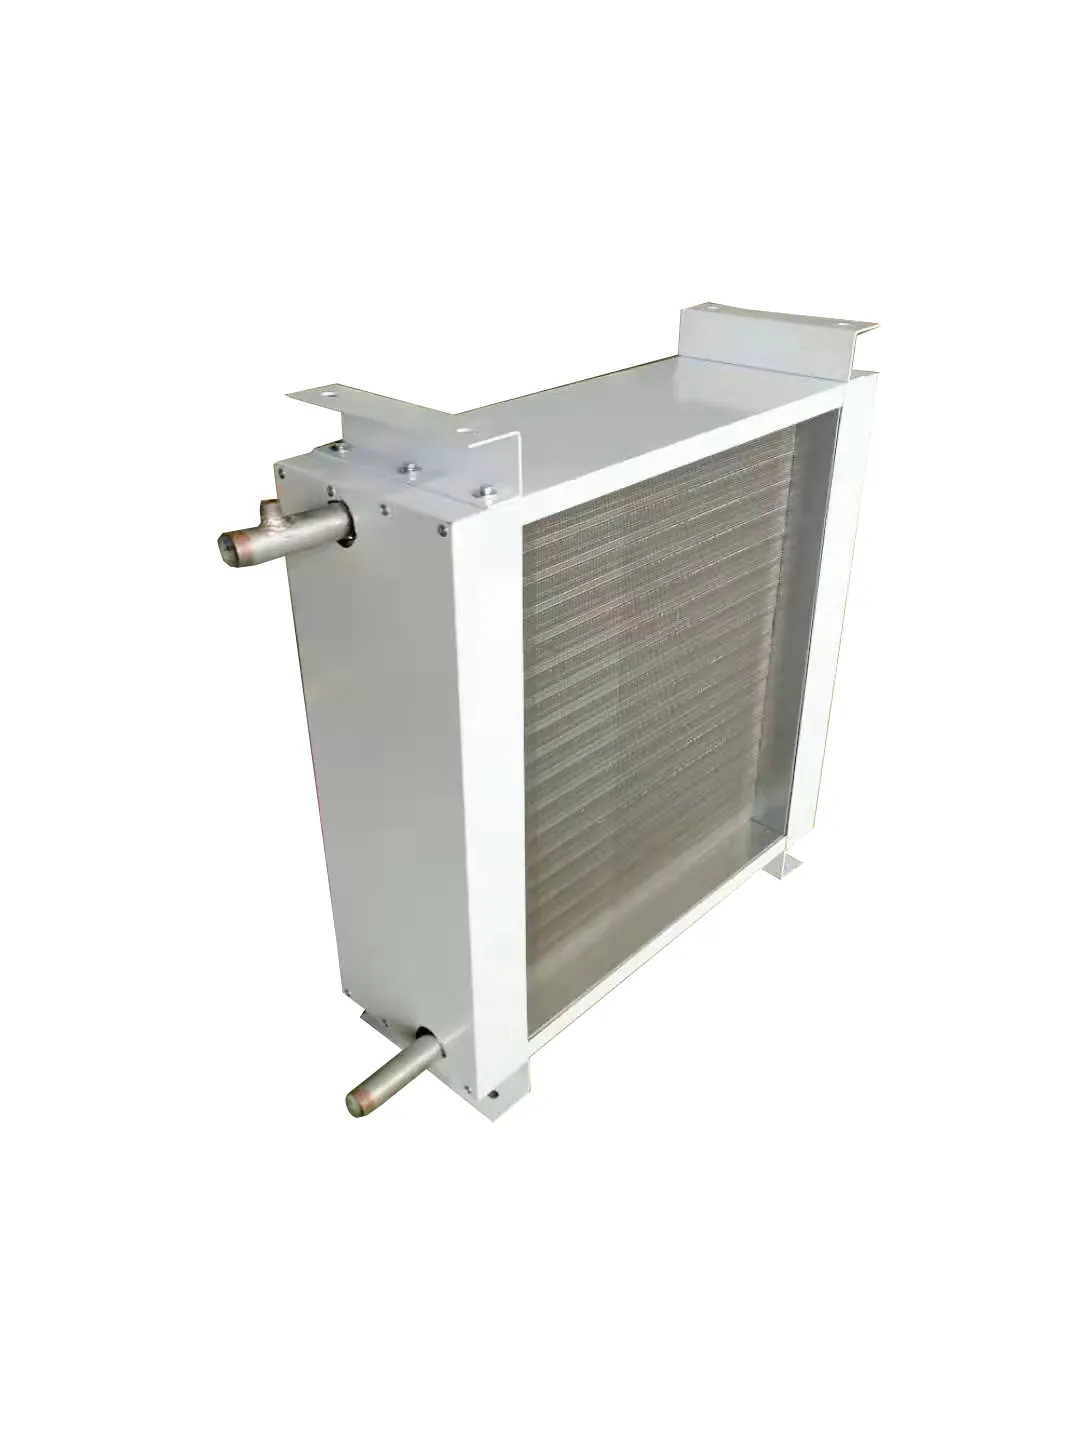 産業ワークショップのための暖房のための熱い販売の暖かい空気送風機/ファンヒーター